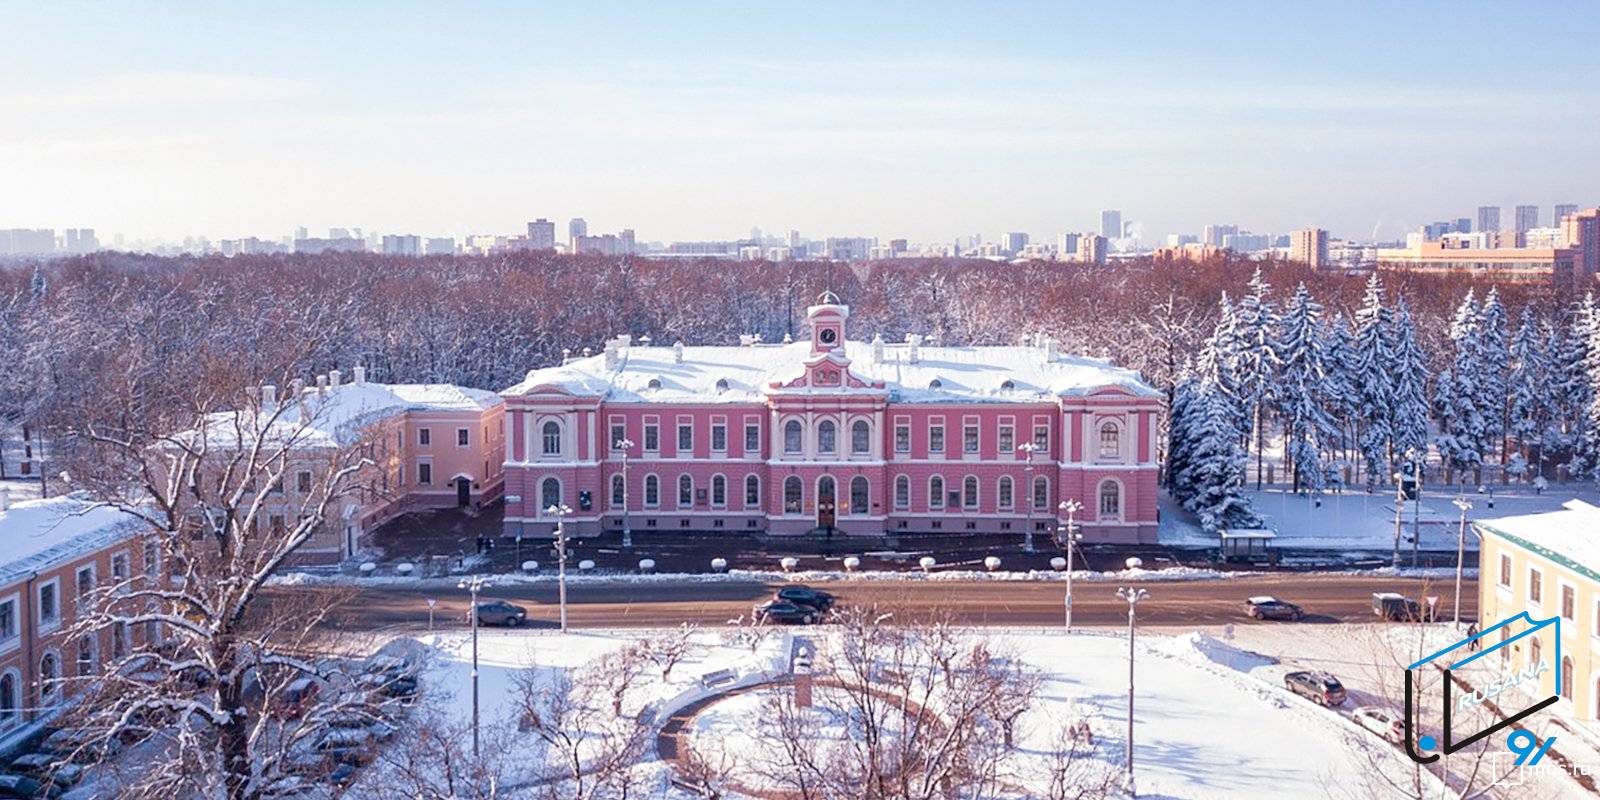 دانشگاه کشاورزی تیمیریازف روسیه